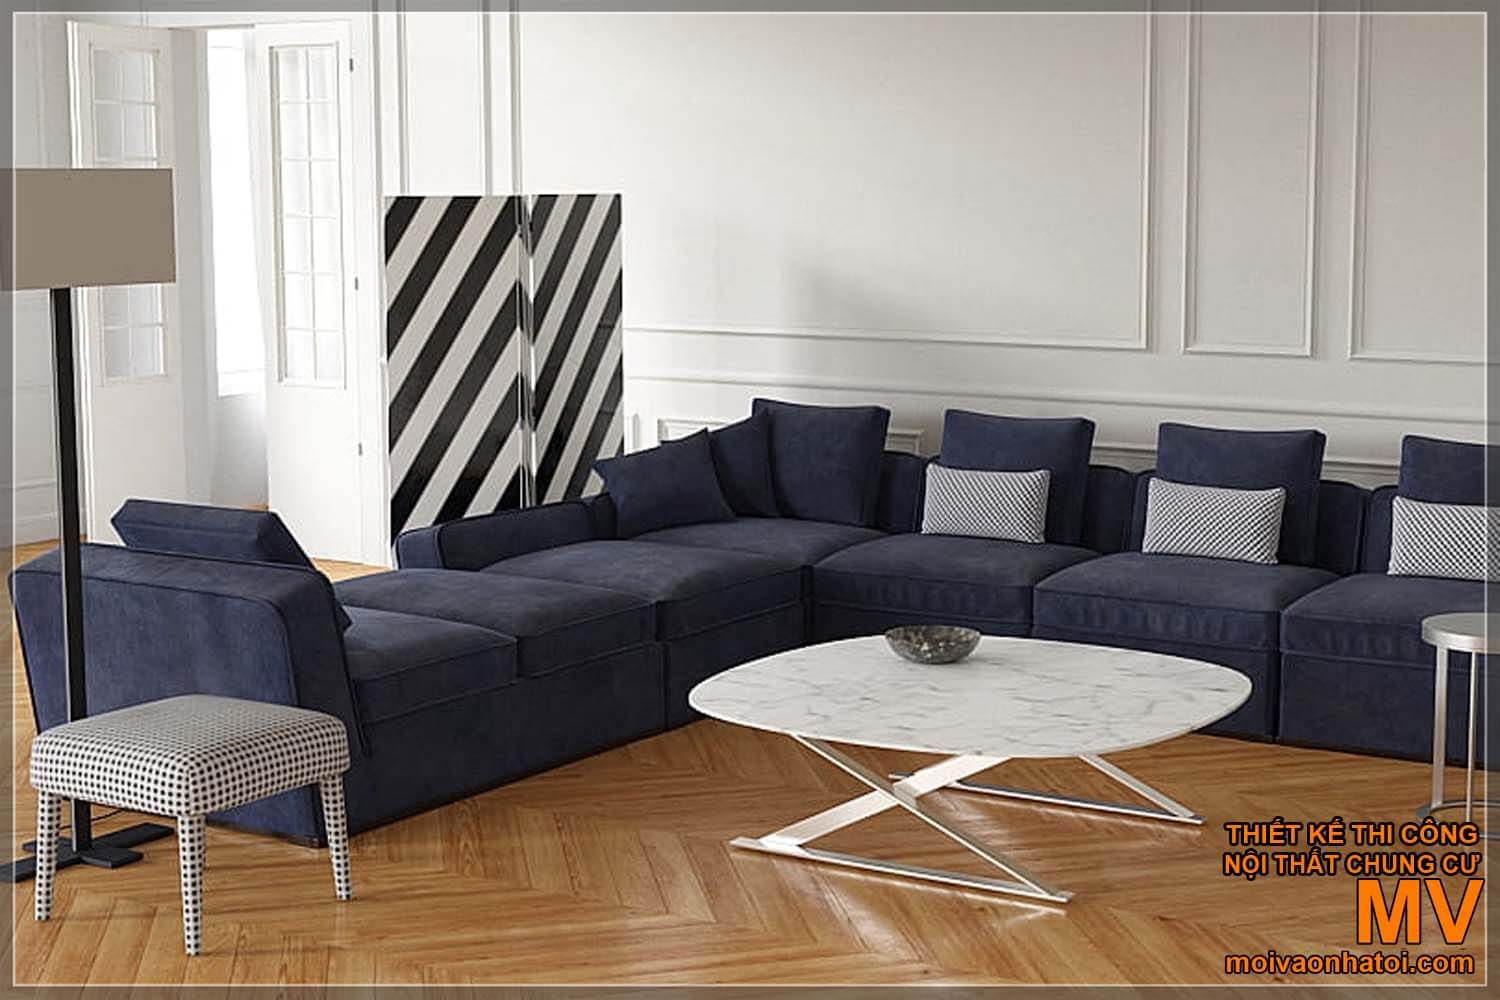 modelli di divani semplici e moderni per case neoclassiche